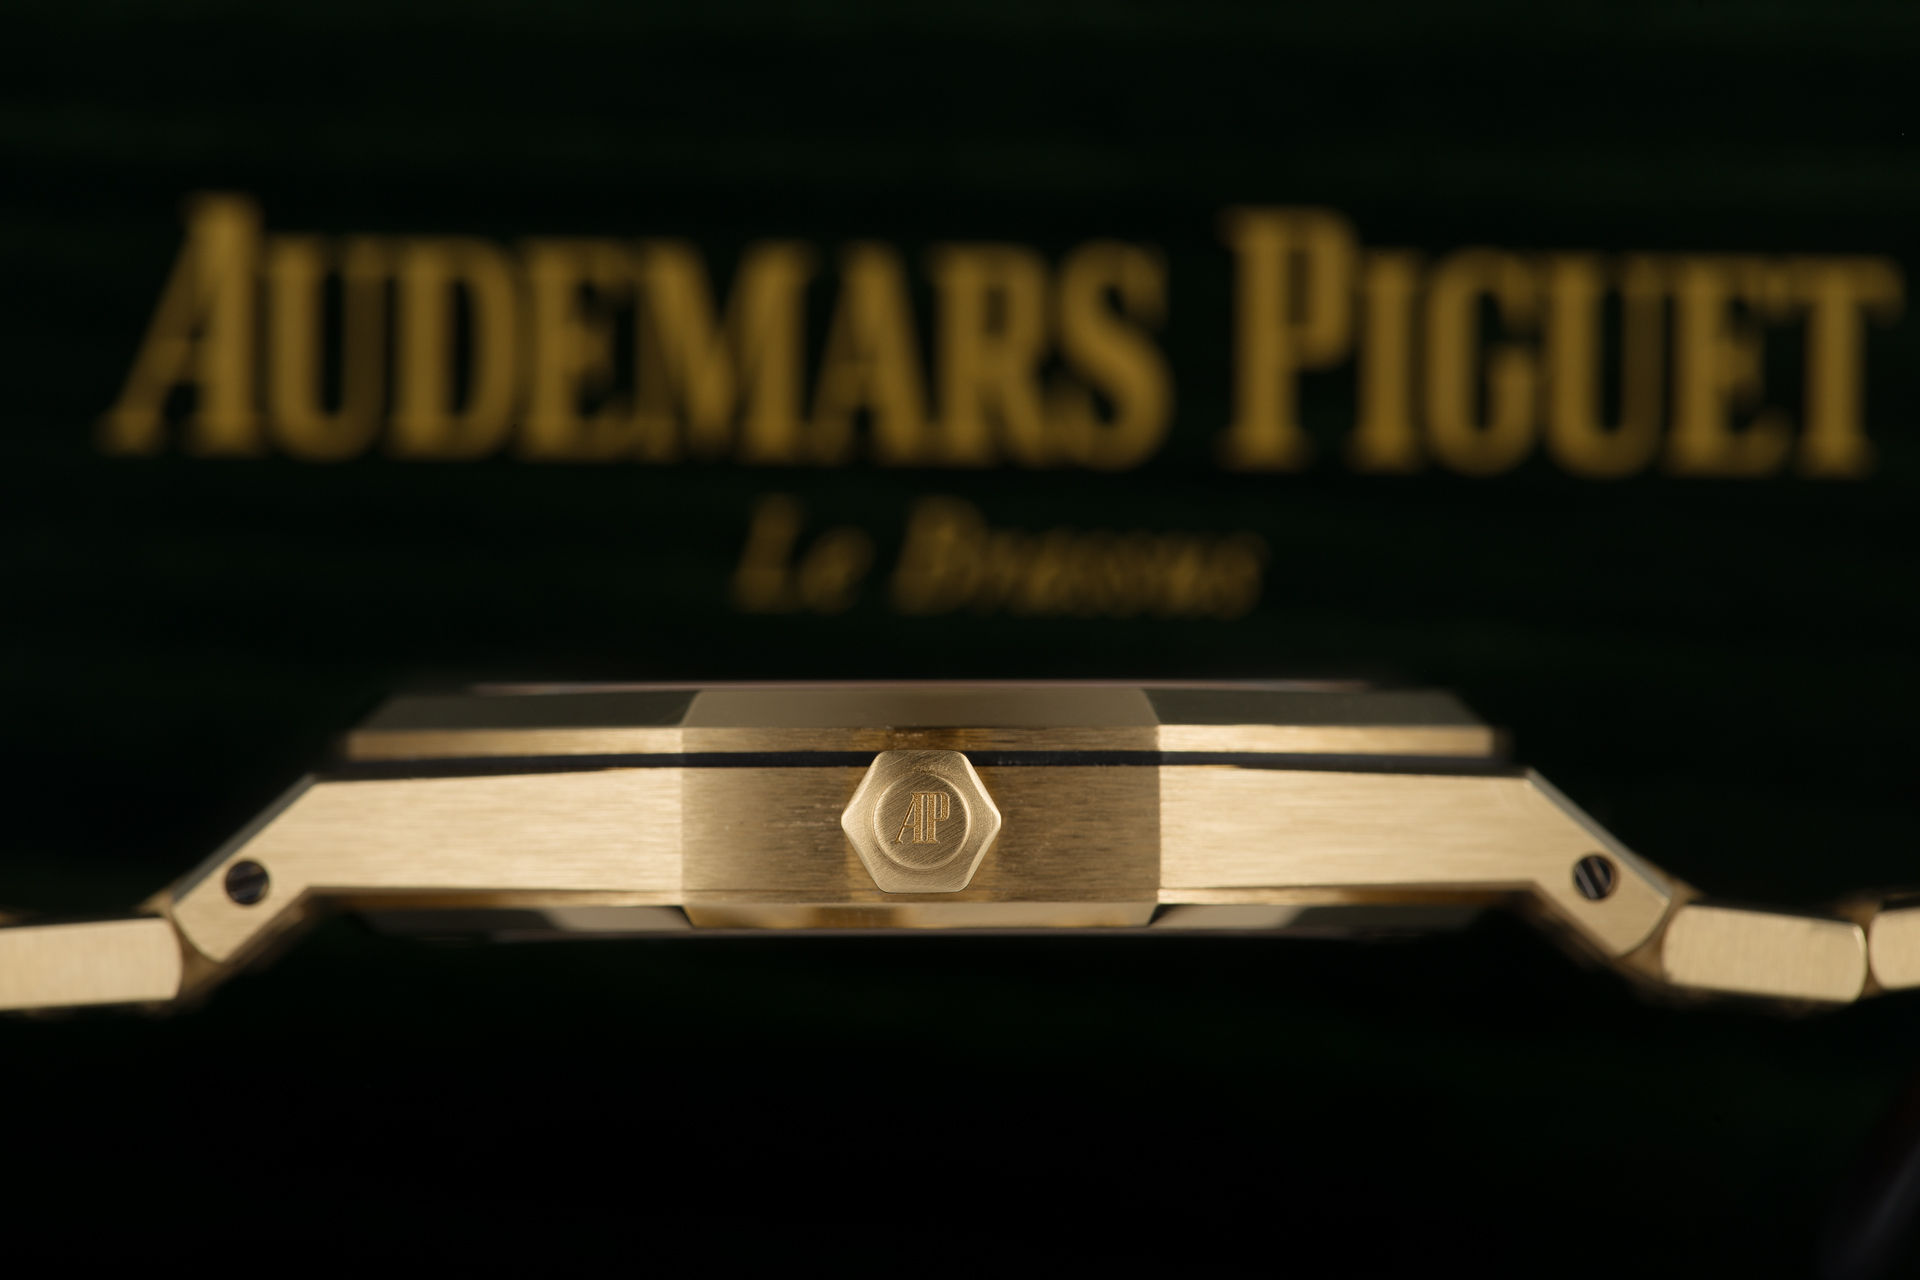 ref 15202BA.OO.1240BA.02.A | As New 39mm 'Jumbo Extra-Thin' | Audemars Piguet Royal Oak